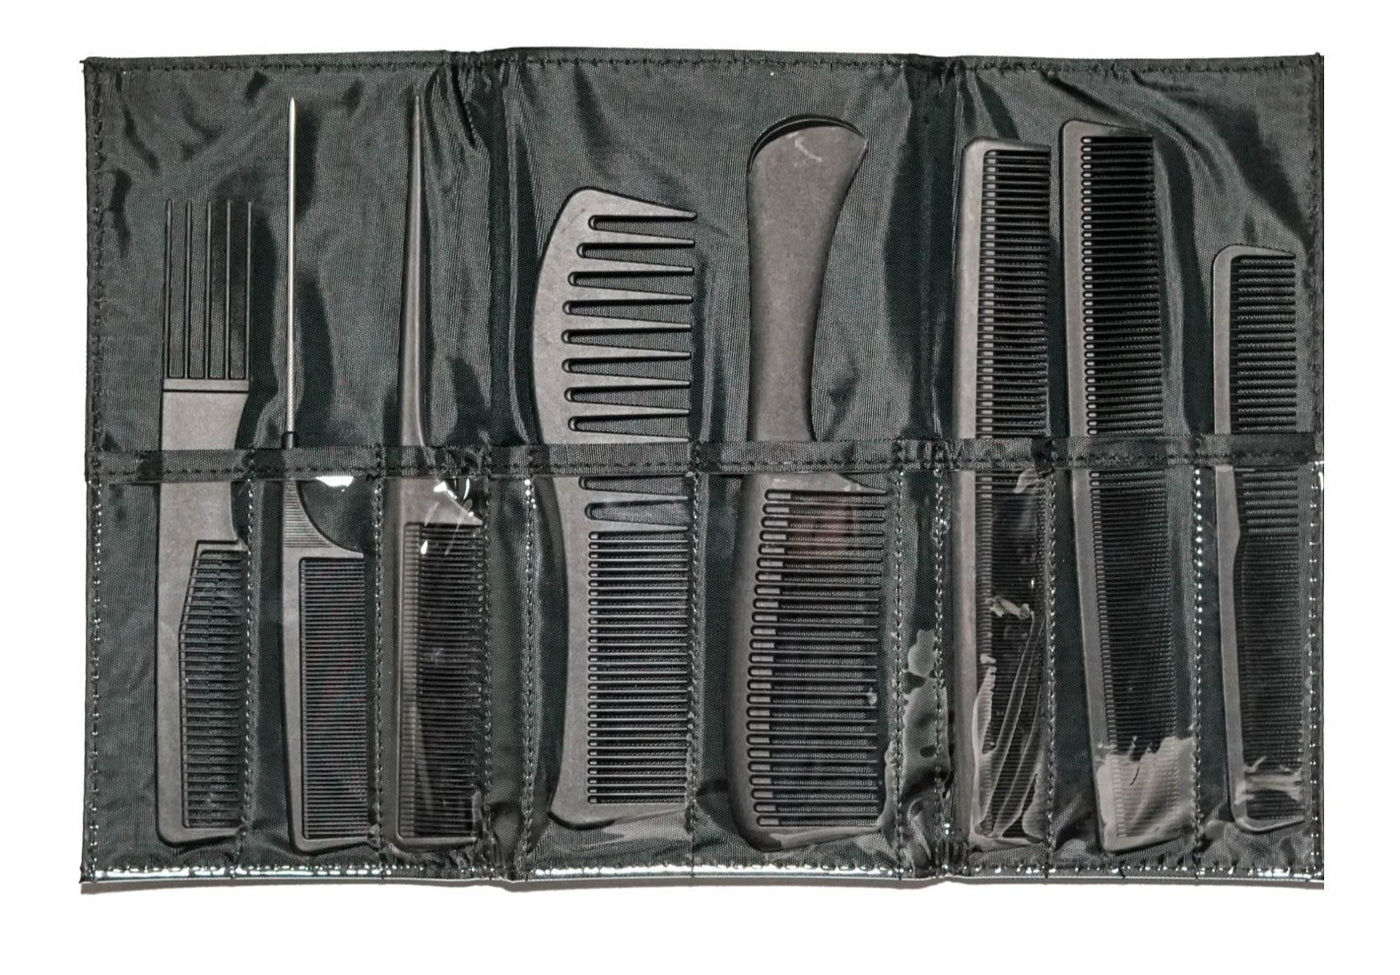 Black Carbon Fibre Comb Set with Bag 9pc - Salon Warehouse